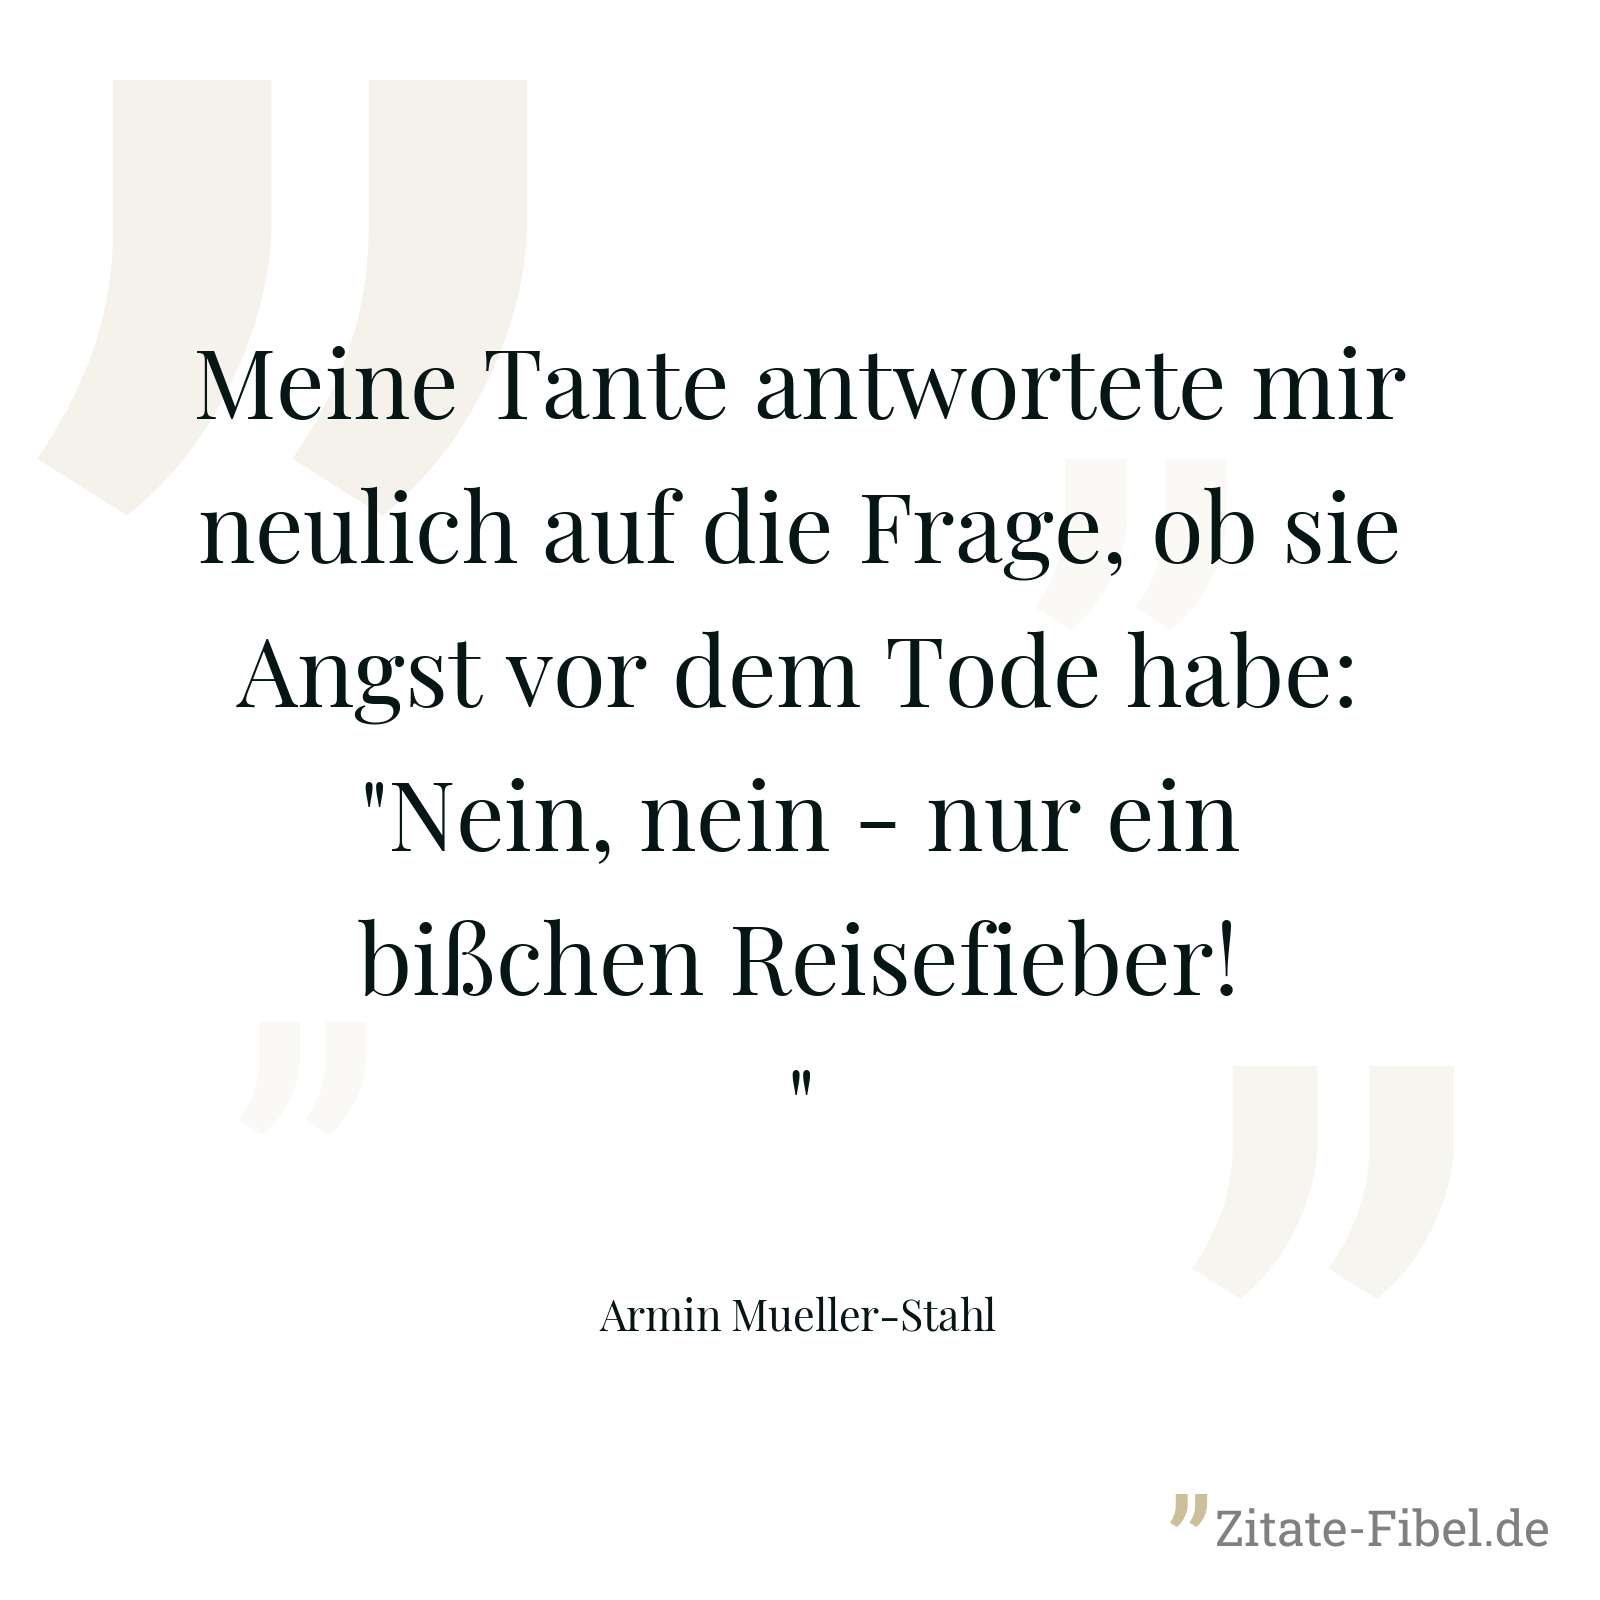 Meine Tante antwortete mir neulich auf die Frage, ob sie Angst vor dem Tode habe: "Nein, nein - nur ein bißchen Reisefieber!" - Armin Mueller-Stahl